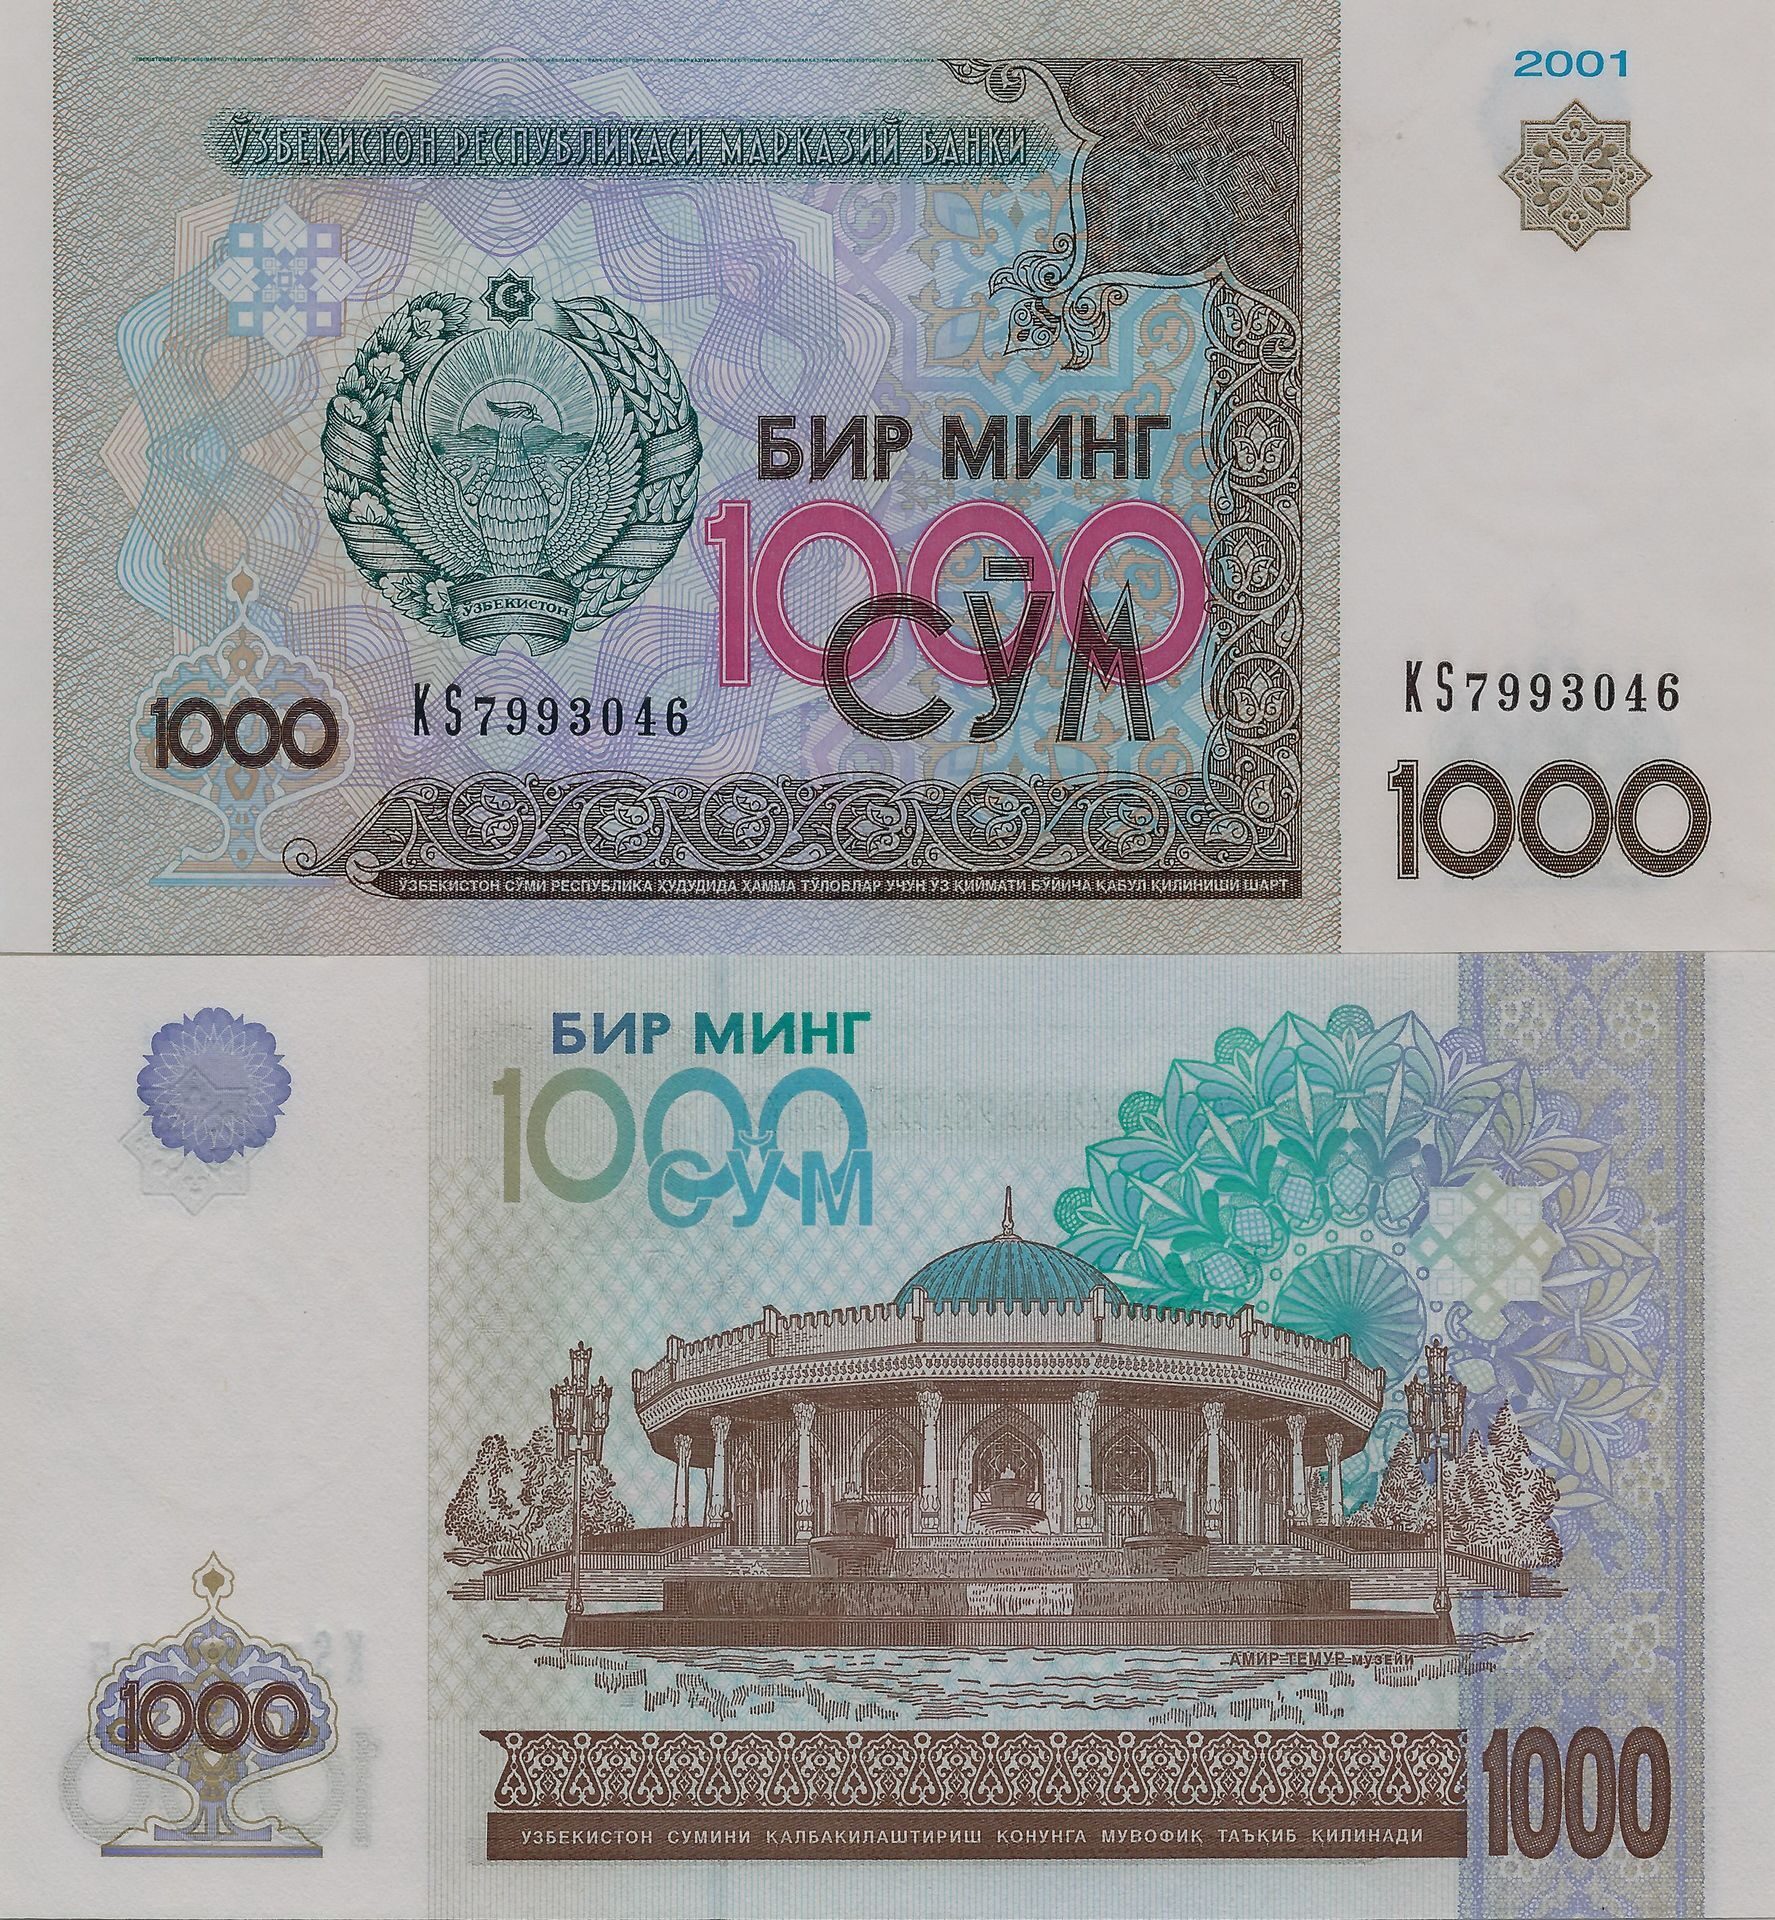 Перевести рубли в узбекские. Узбекистан 1000 сум 2001 года. 1000 Сум купюра. 1000 Сум в рублях. Деньги копюрыв 2001 году.